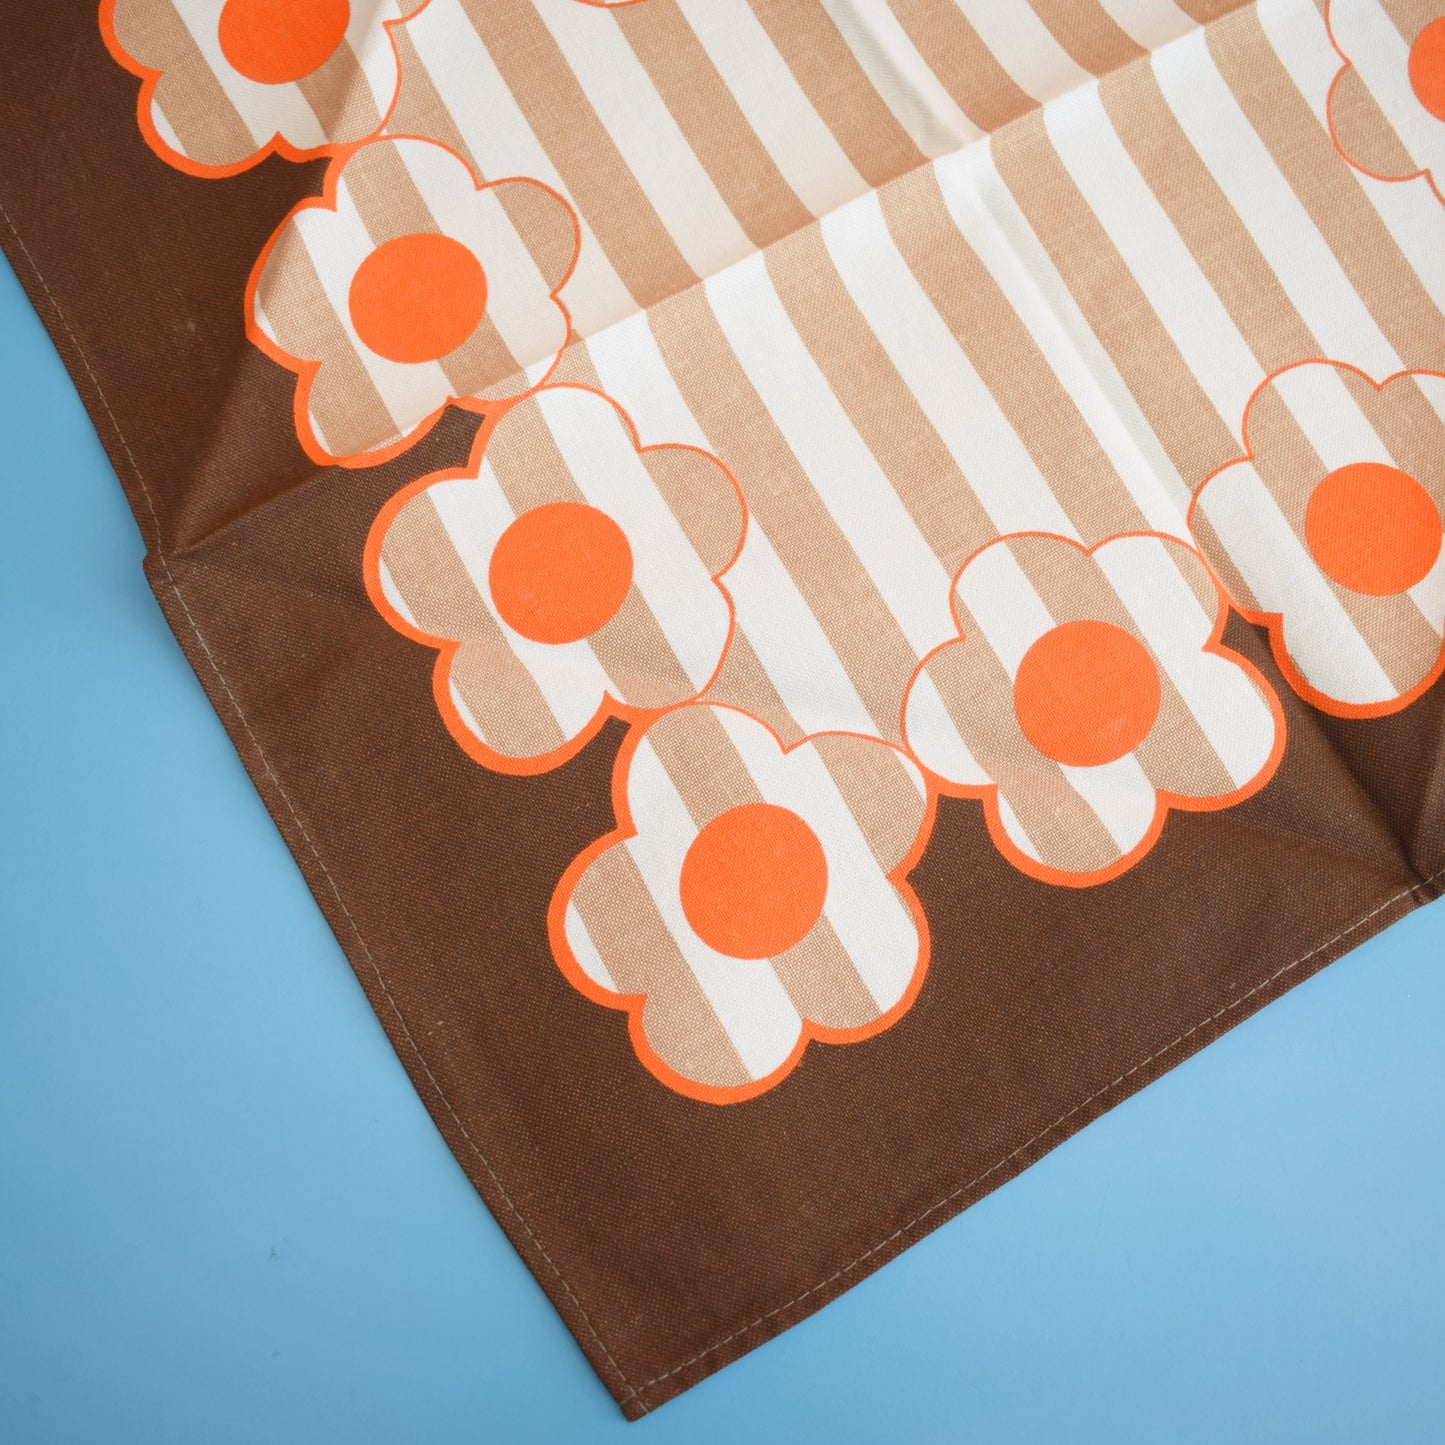 Vintage 1970s Large Tablecloth & Napkin Set - Brown Orange Flower